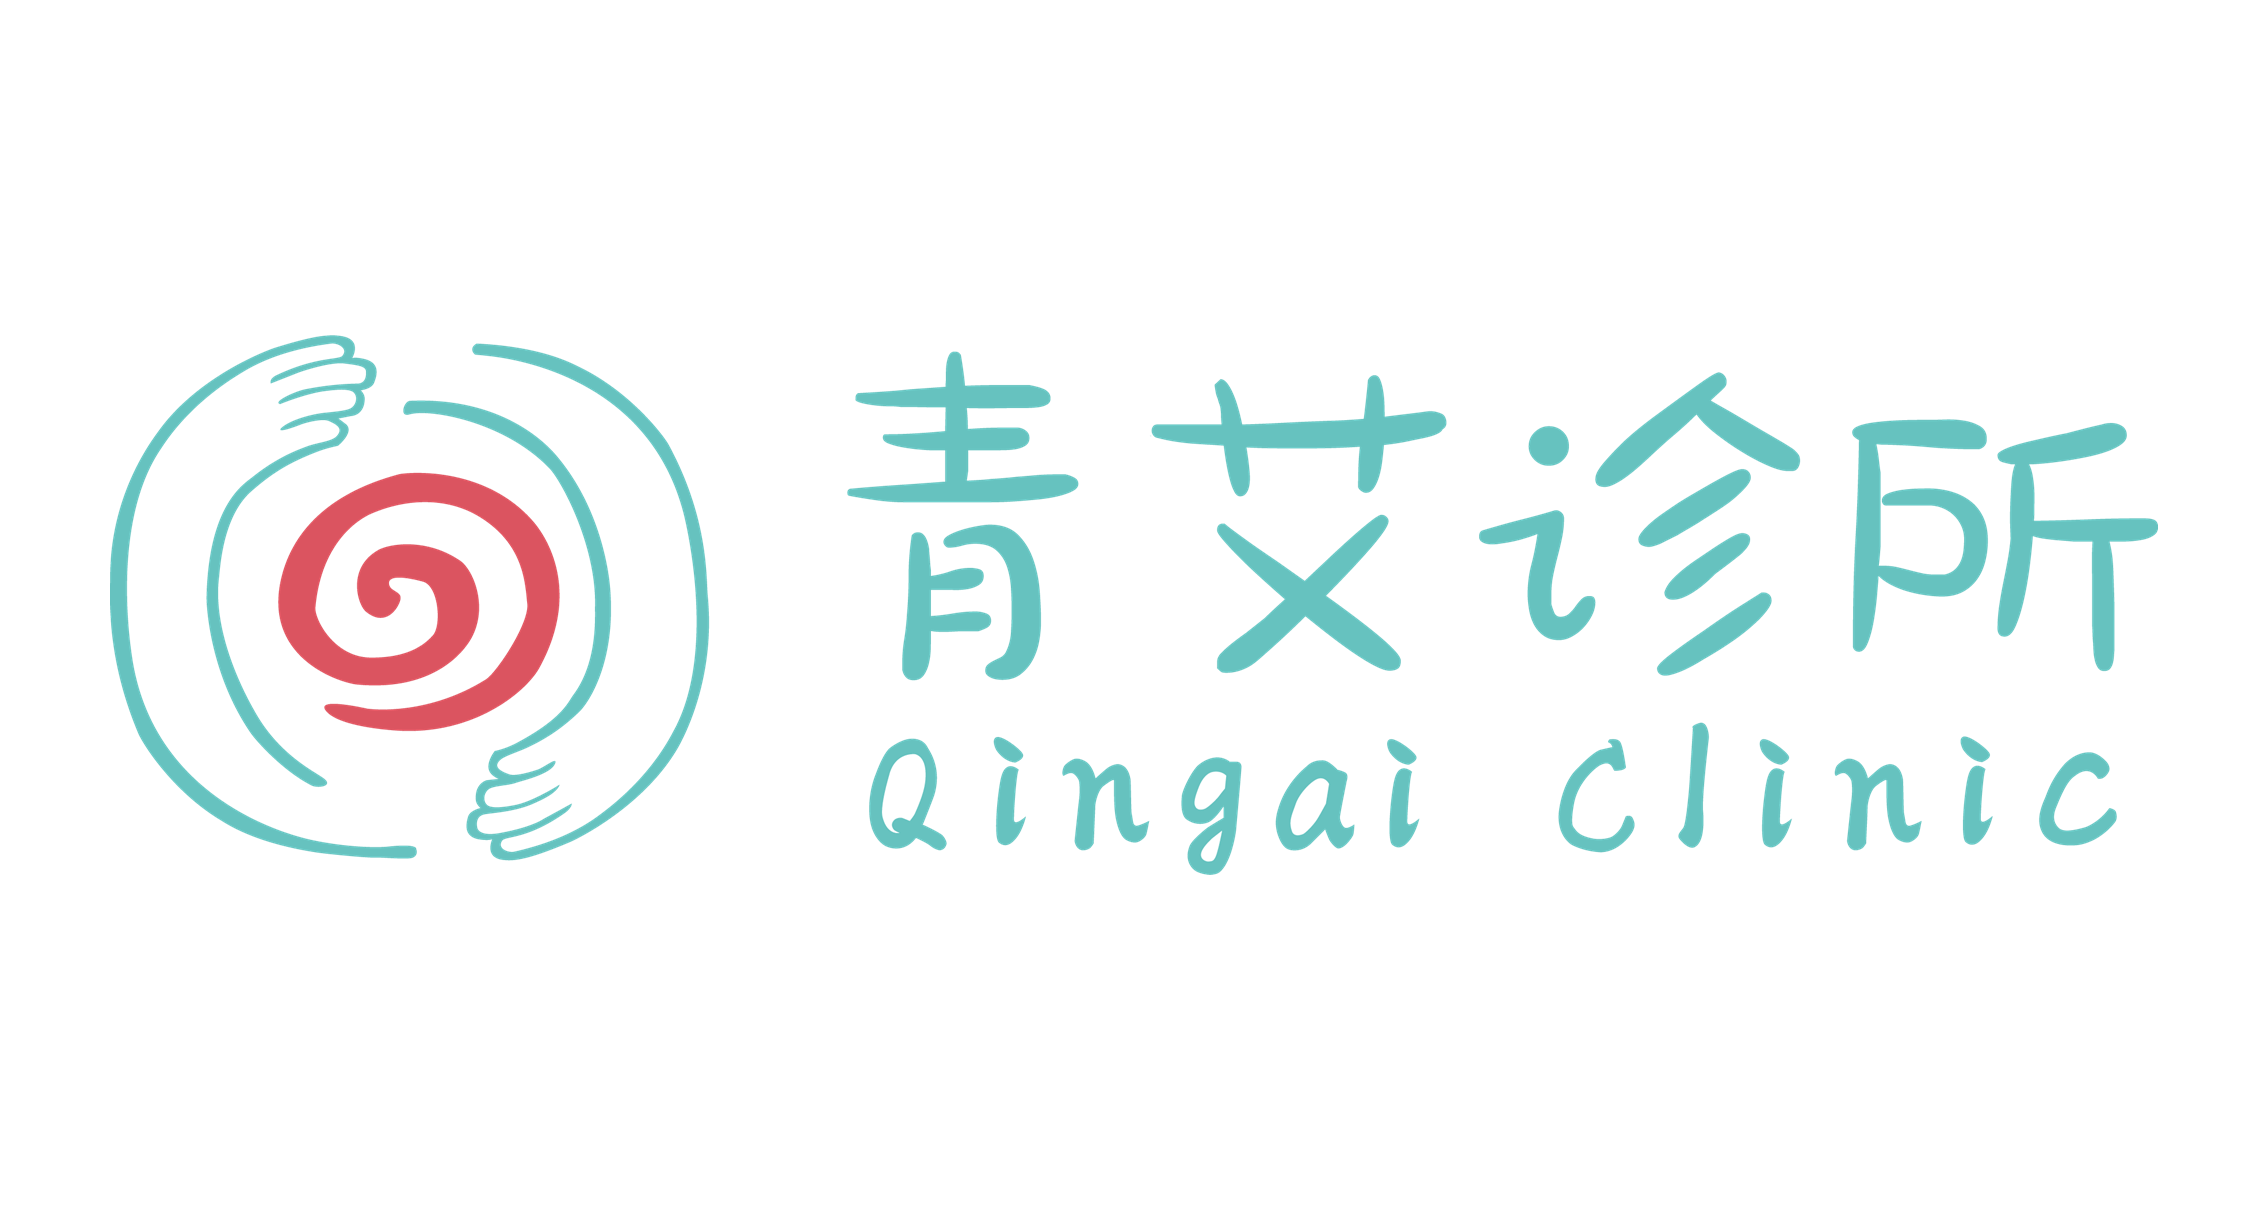 上海青艾皮肤科诊所 QingAi Clinic